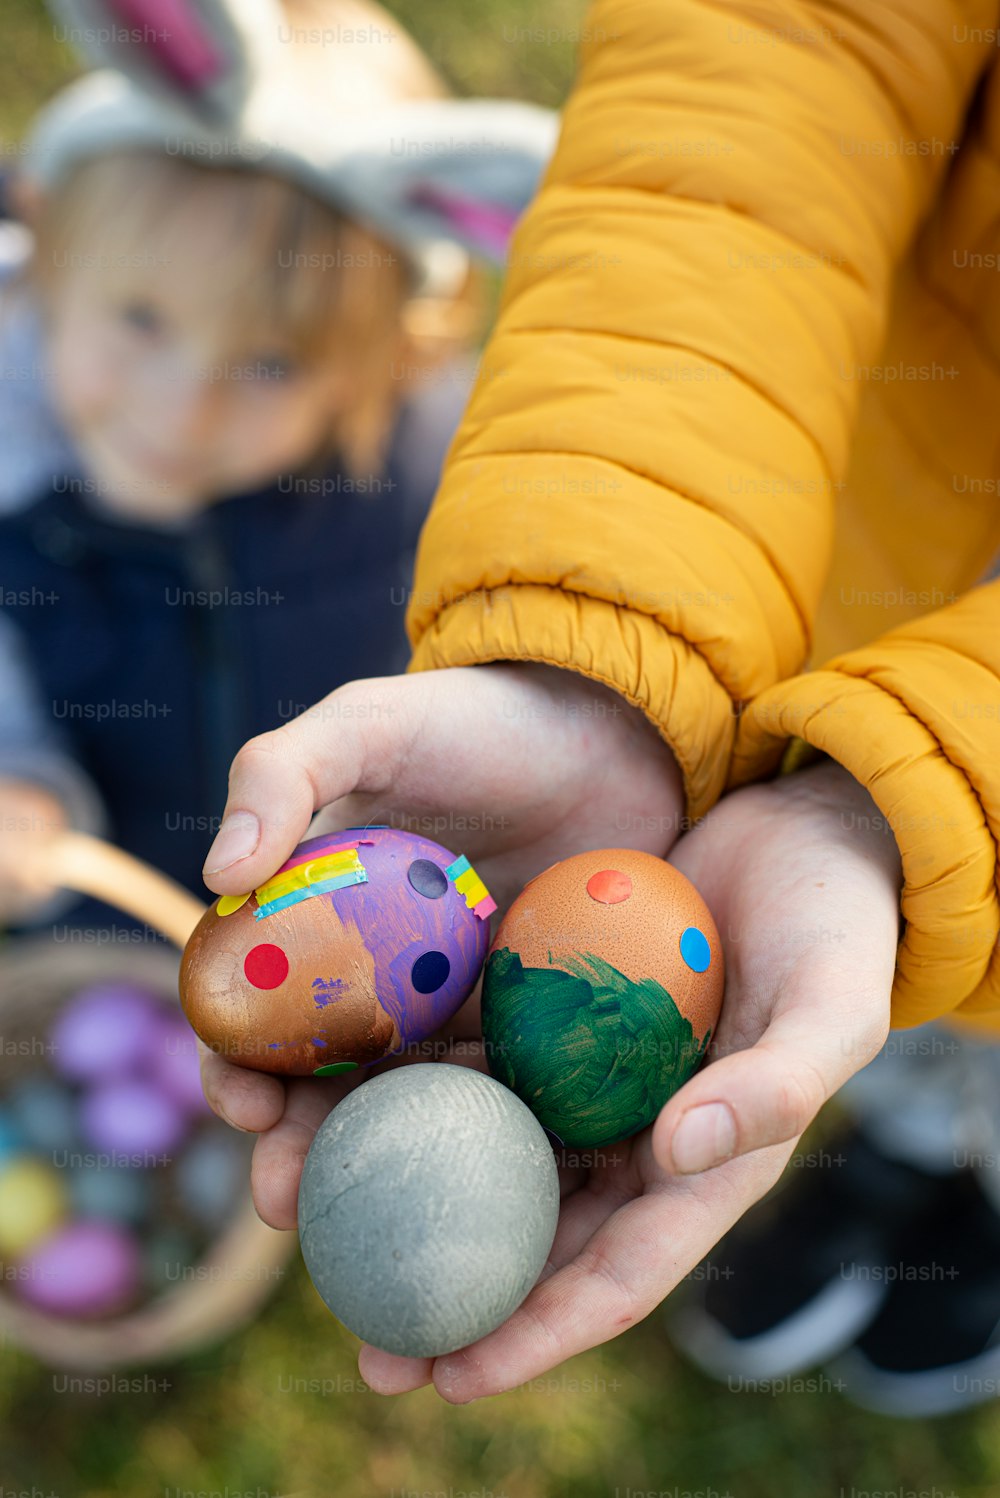 una persona sosteniendo tres huevos en sus manos